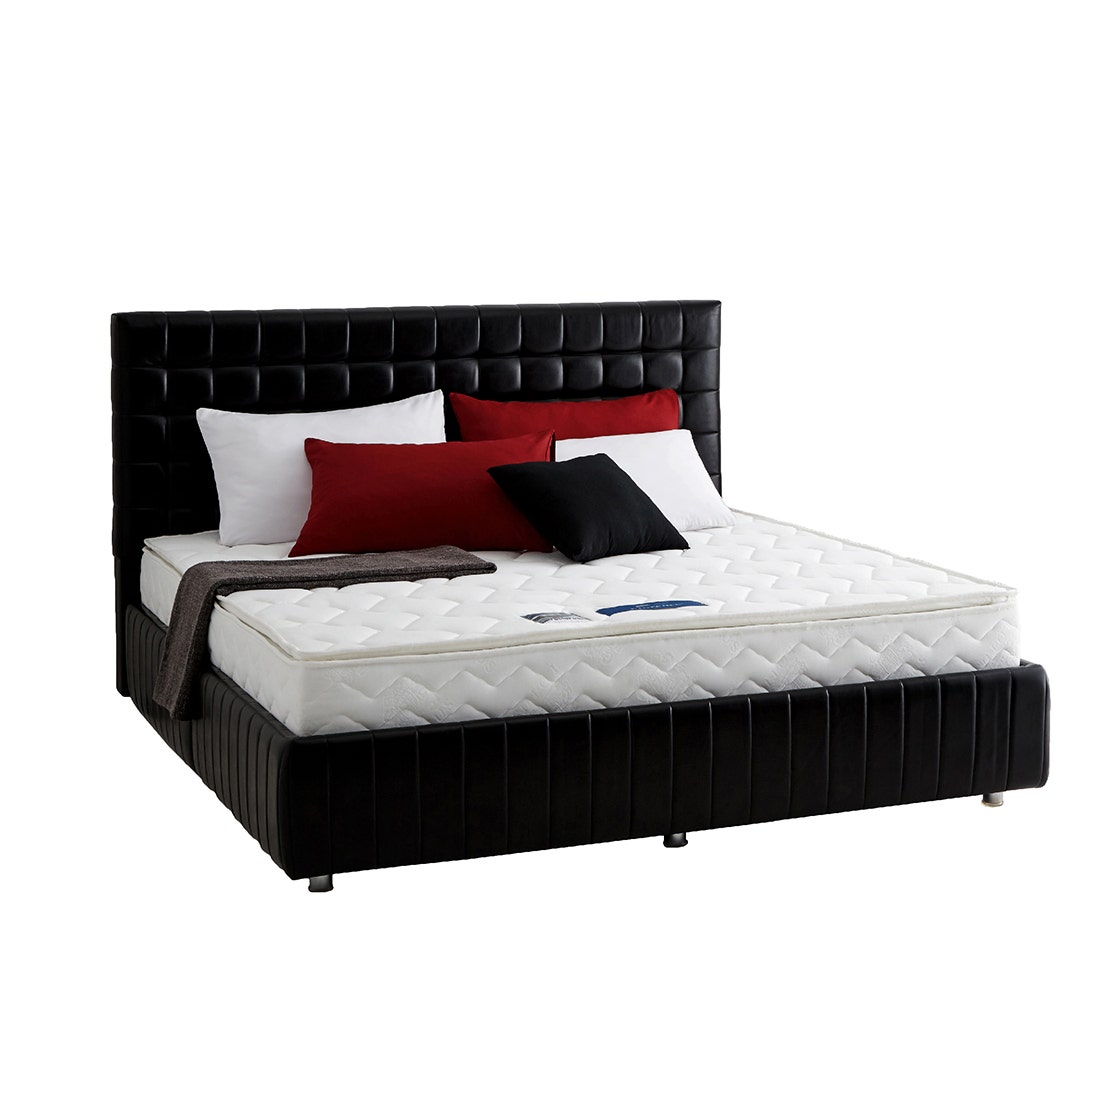 39004962-mattress-bedding-mattresses-foam-mattresses-06